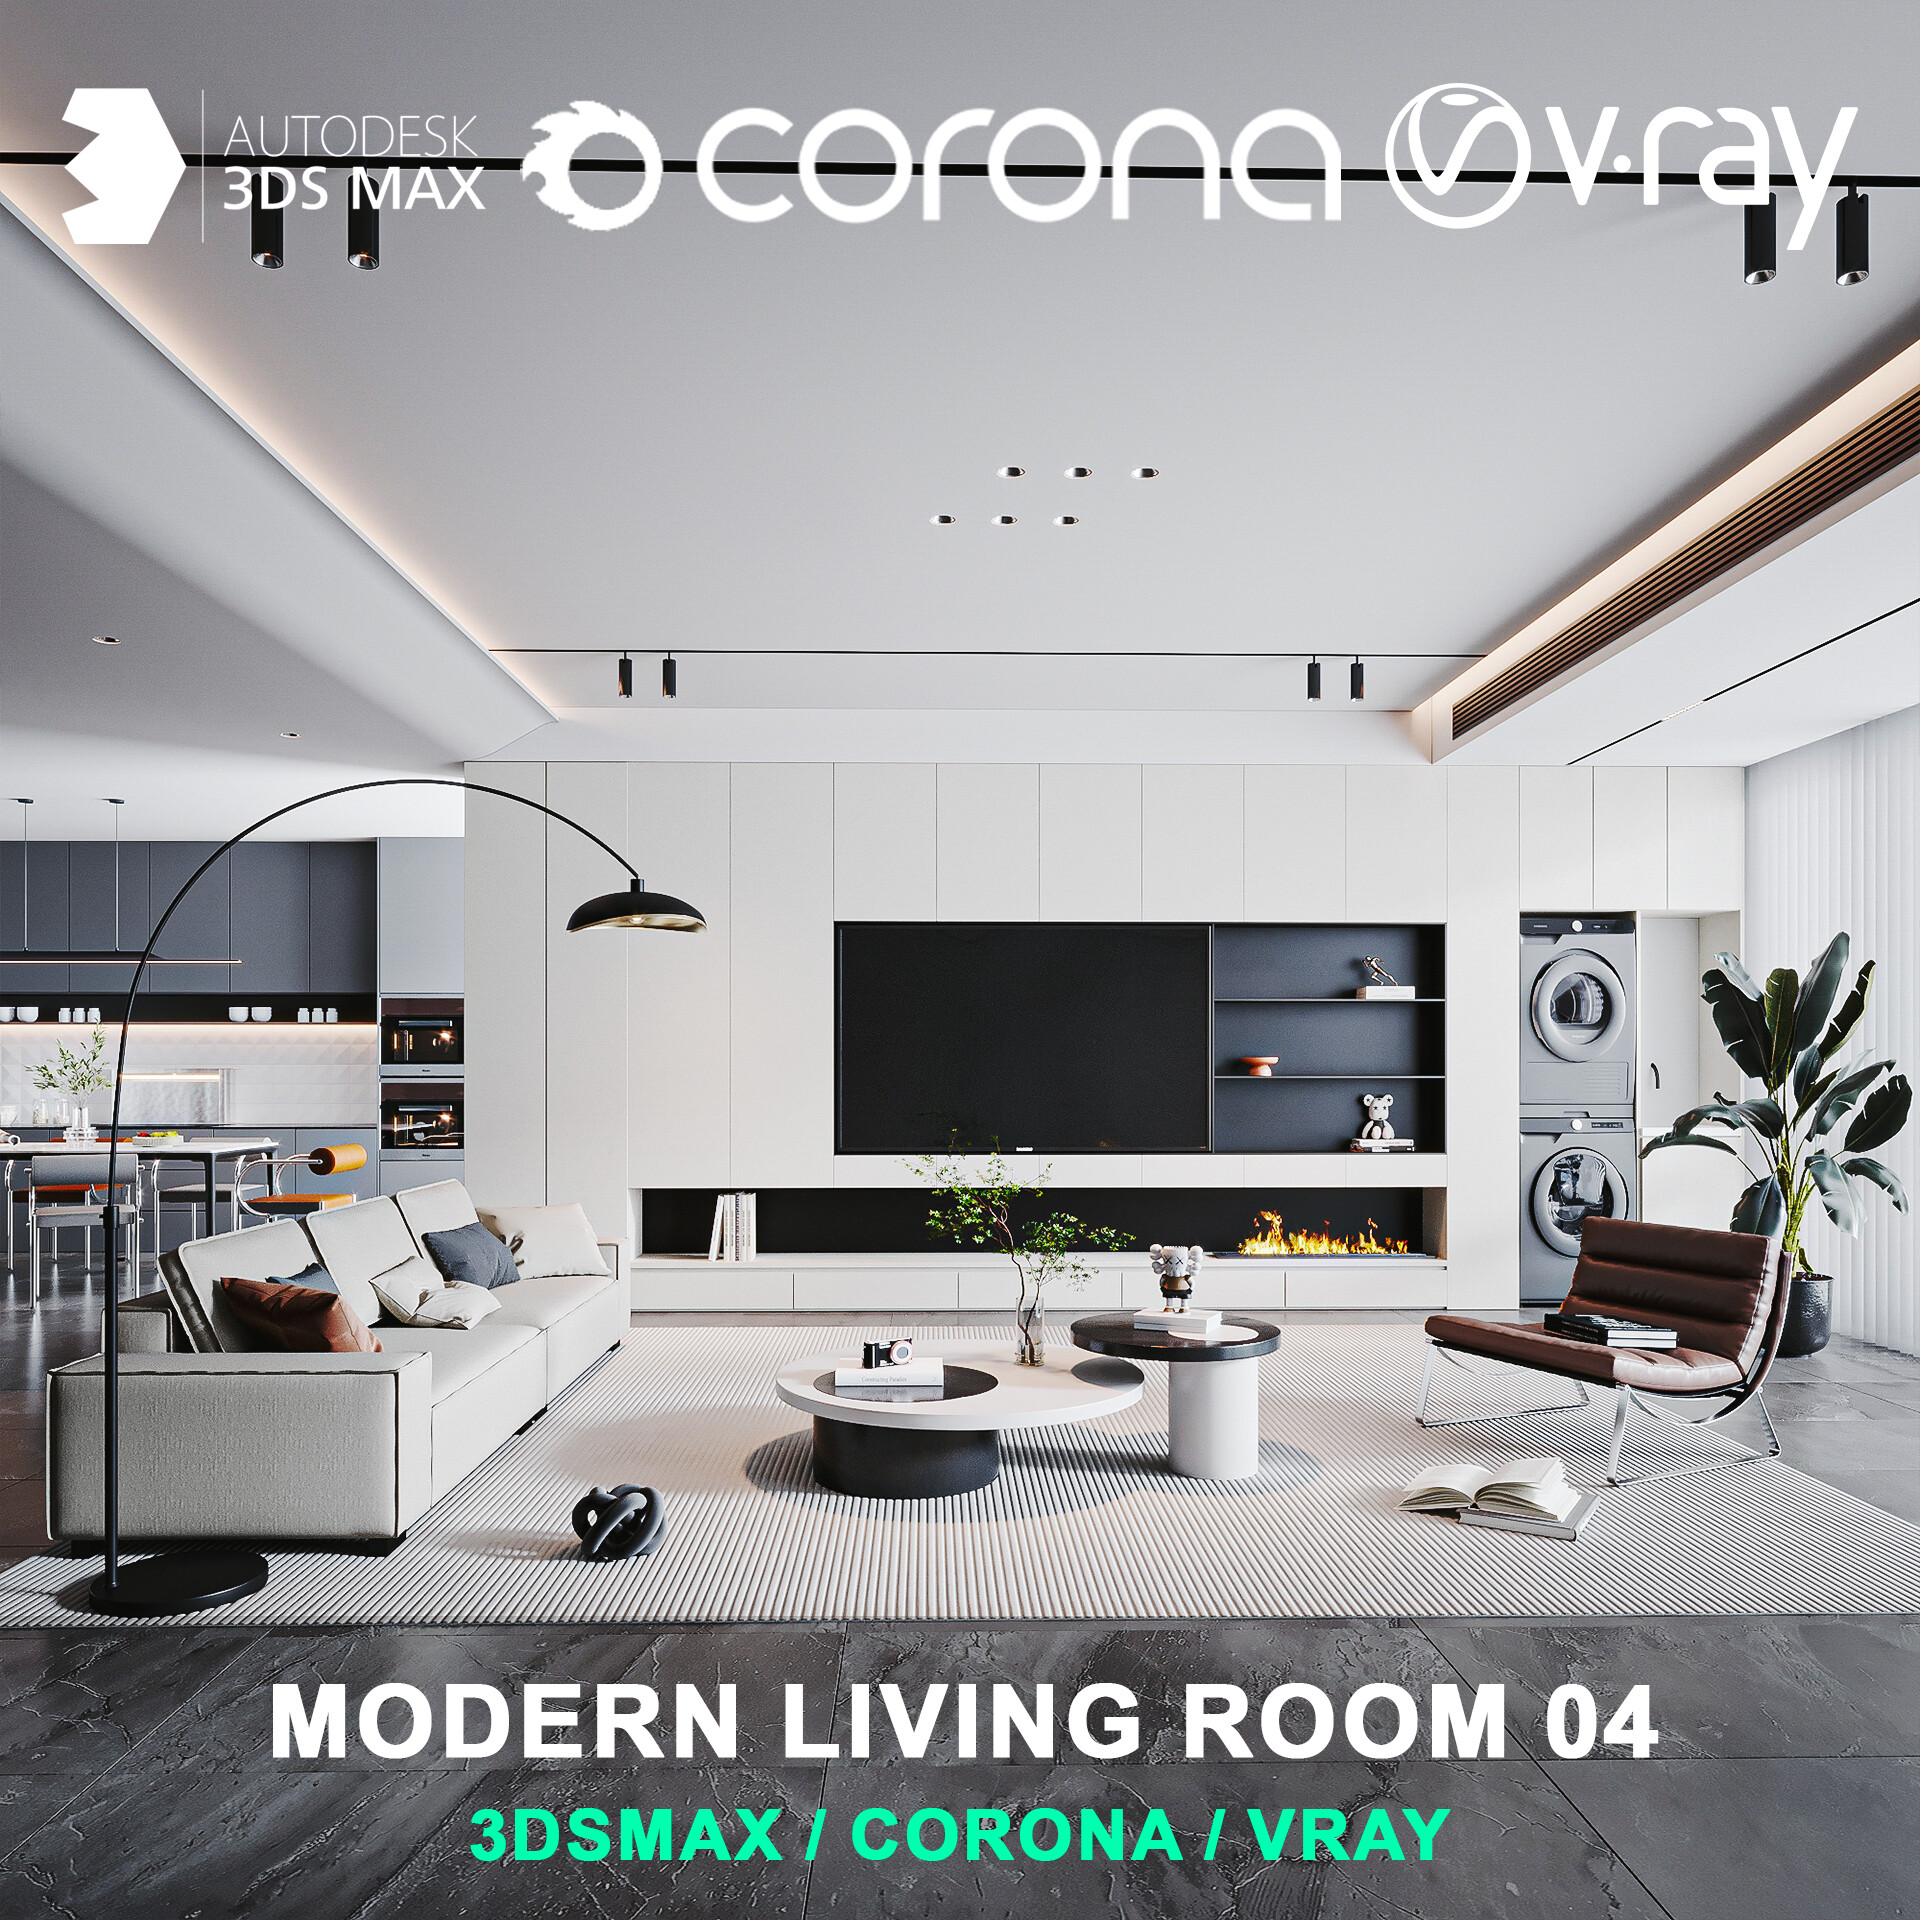 Modern living room 04 for 3DsMax